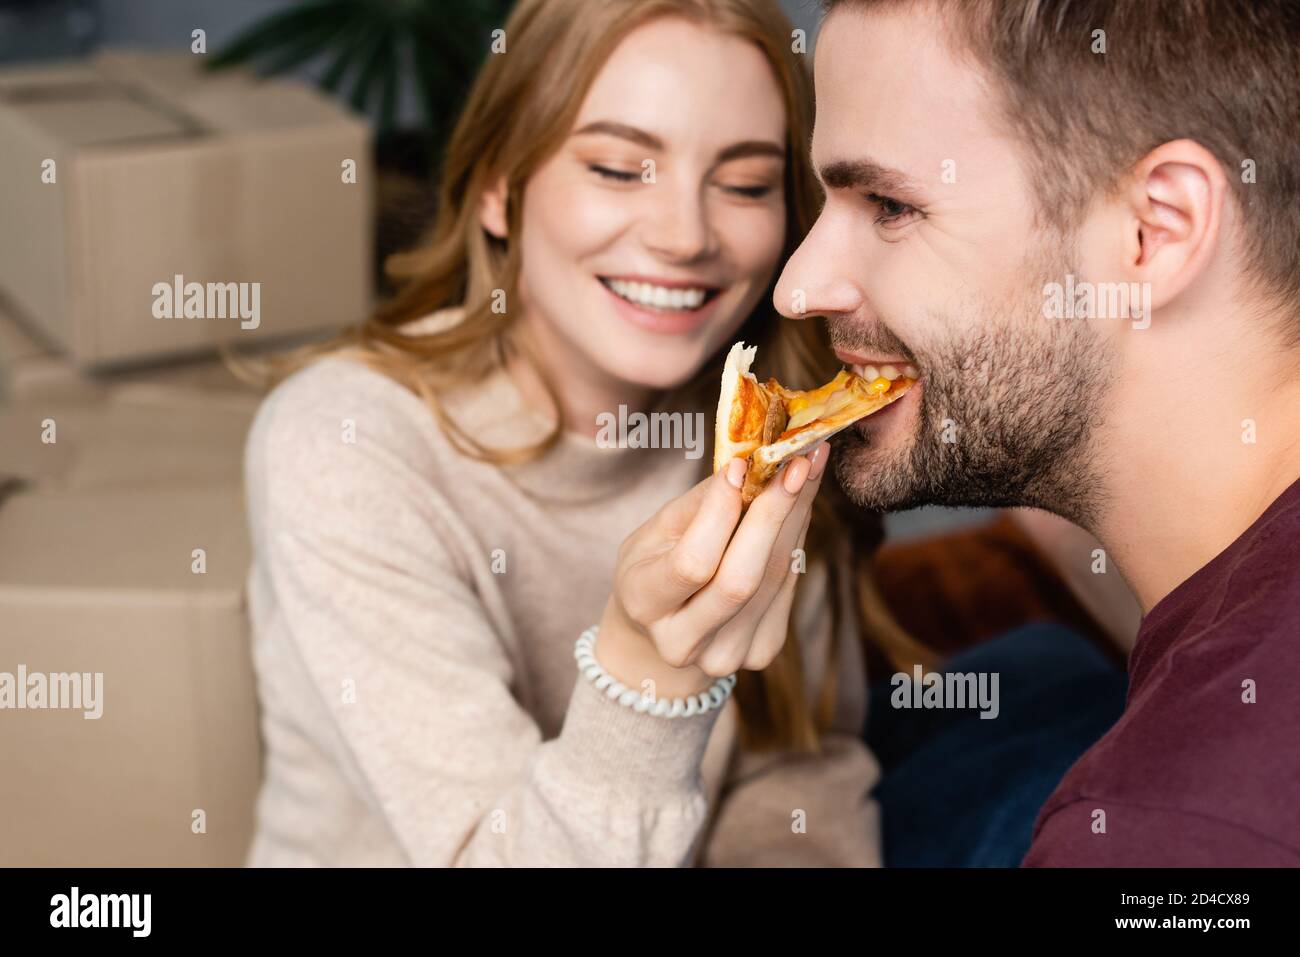 fuoco selettivo della donna che alimenta l'uomo bearded con la pizza Foto Stock